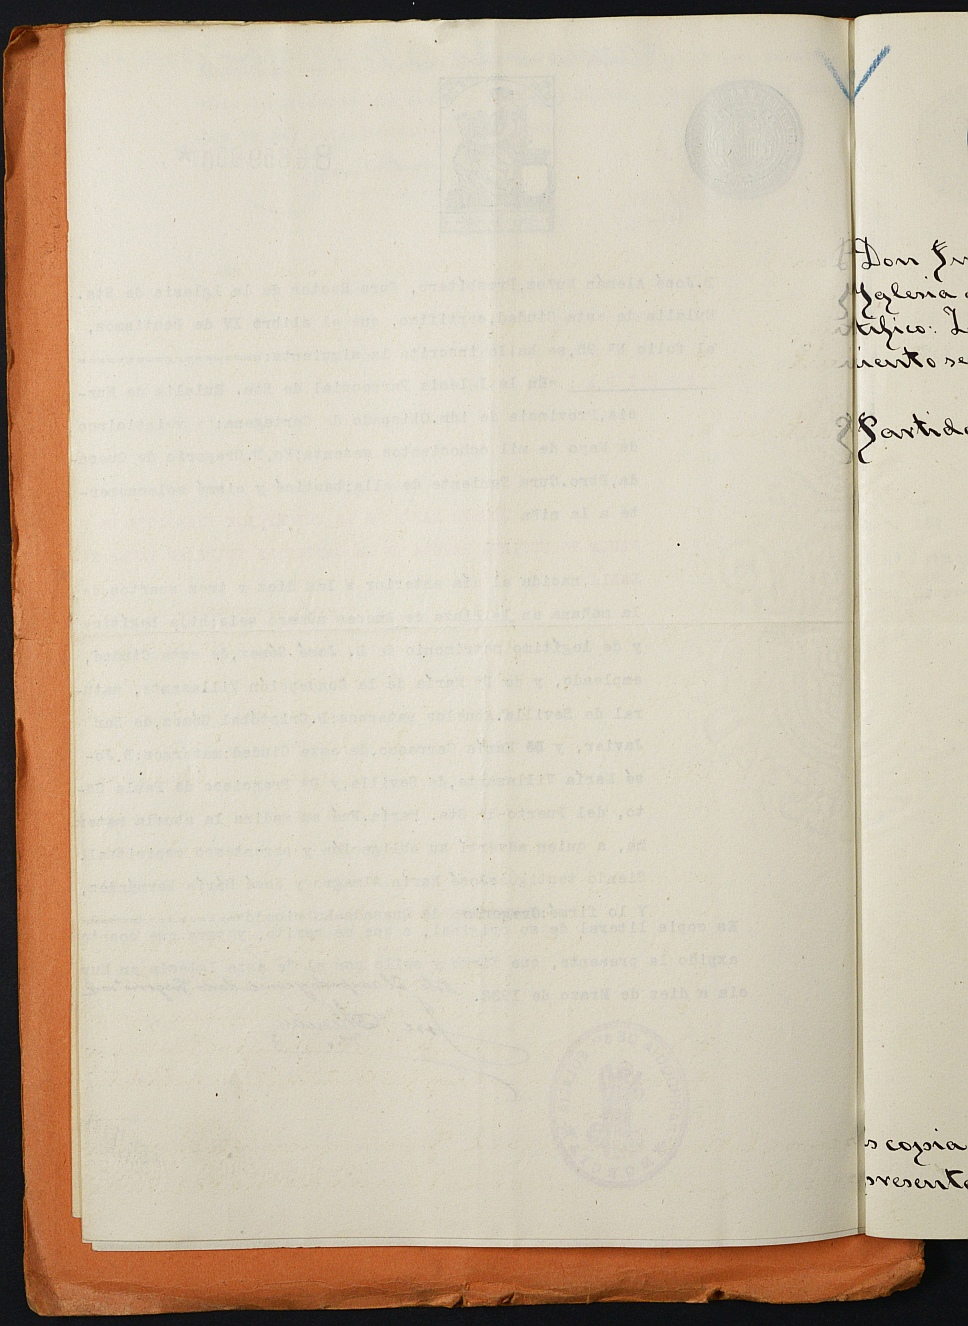 Declaración de herederos 16/1932 del Juzgado de Primera Instancia del Distrito de San Juan de Murcia, por fallecimiento de Rita Gómez Bravo-Villasante.